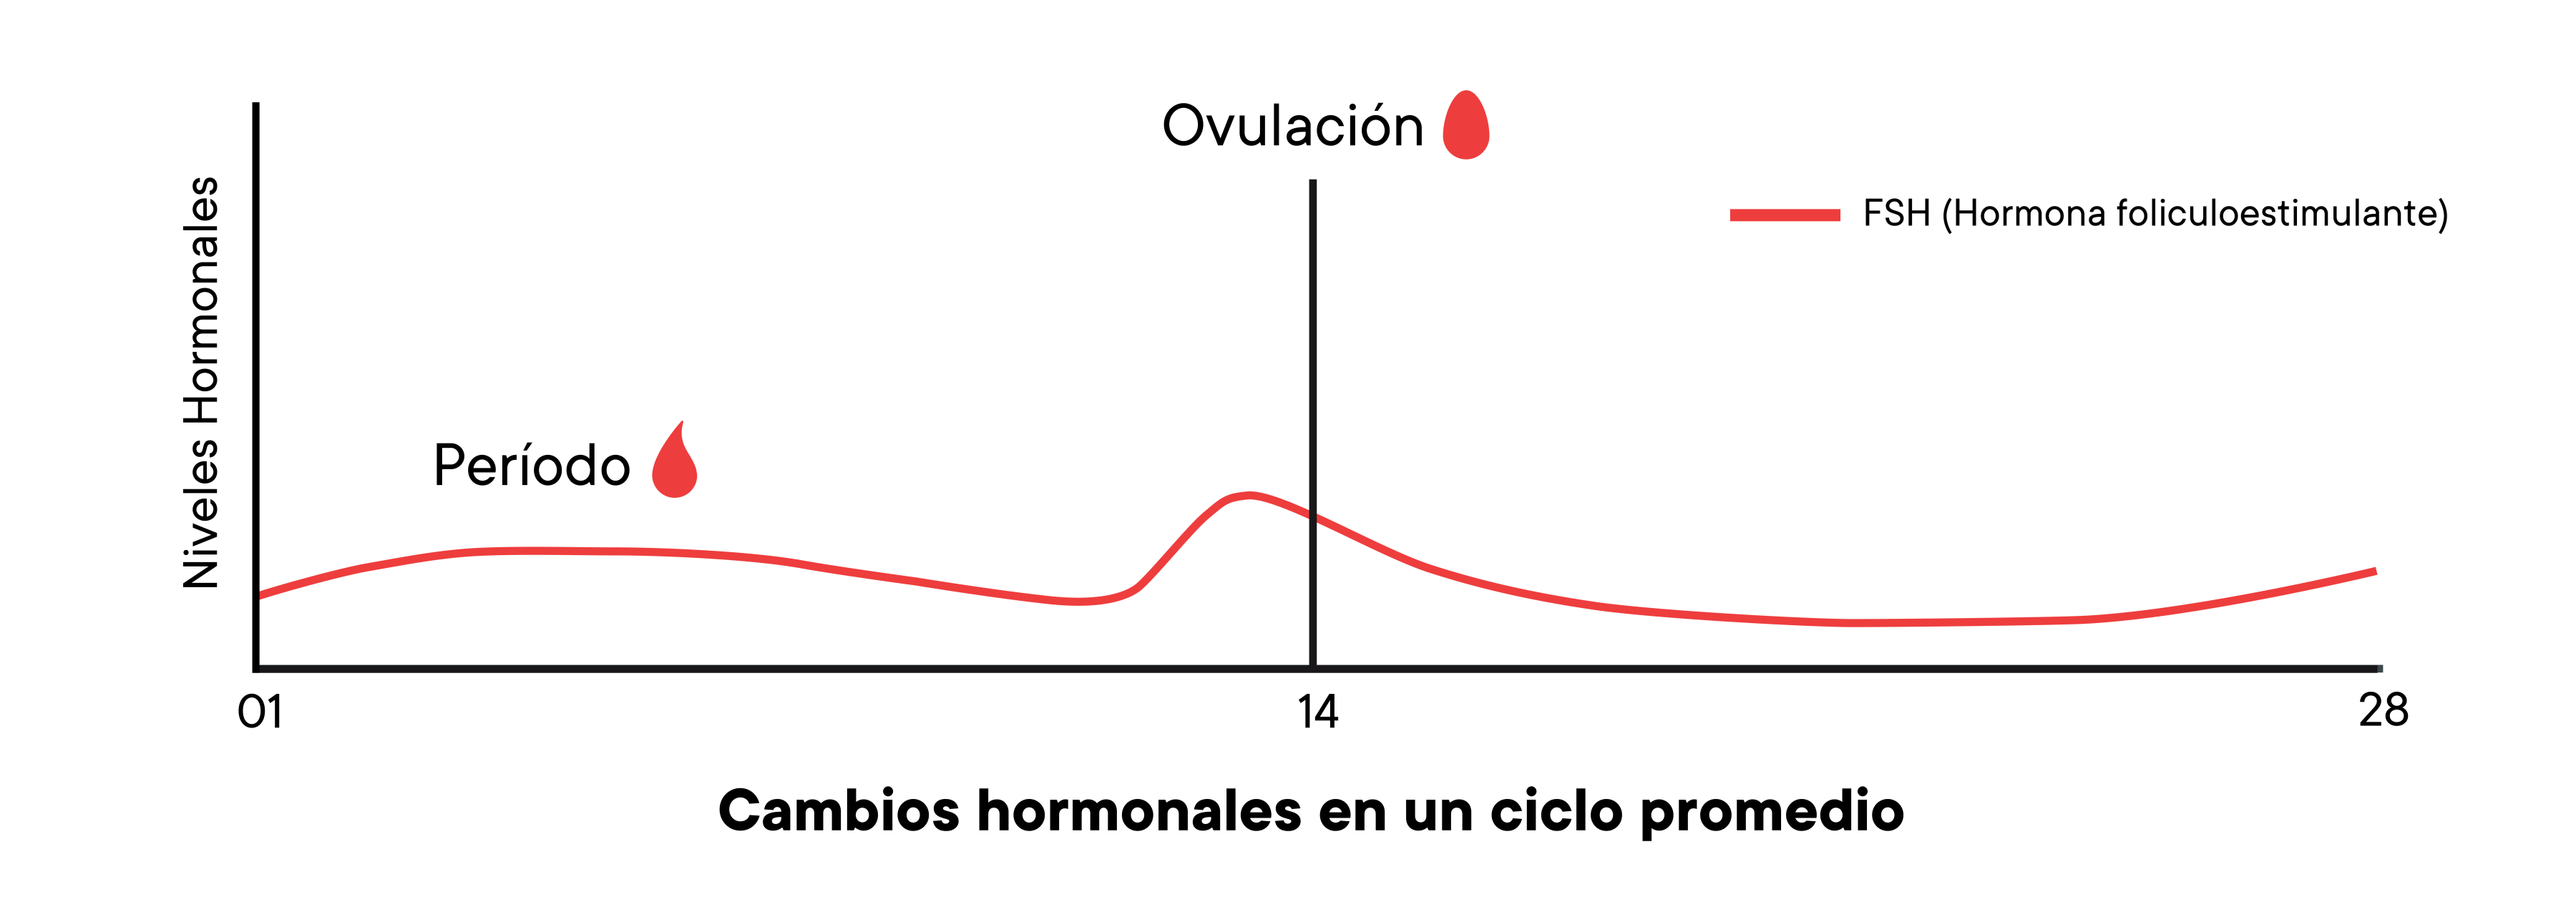 Un gráfico que muestra los cambios de los niveles hormonales en un ciclo promedio a lo largo del tiempo.